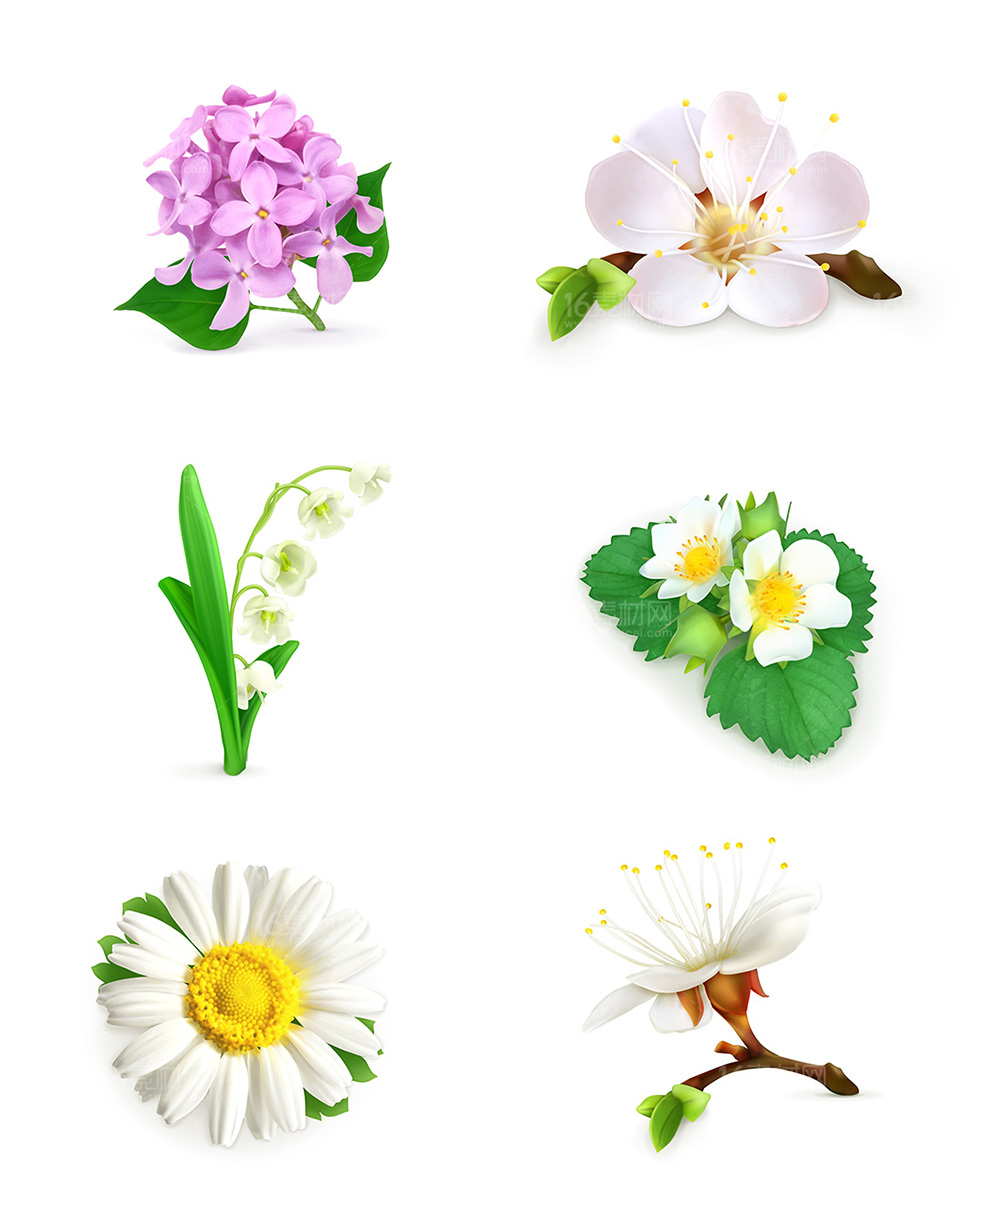 0  点 关键词: 美丽的花朵设计矢量素材,卡通鲜花,美丽花朵,卡通花朵 